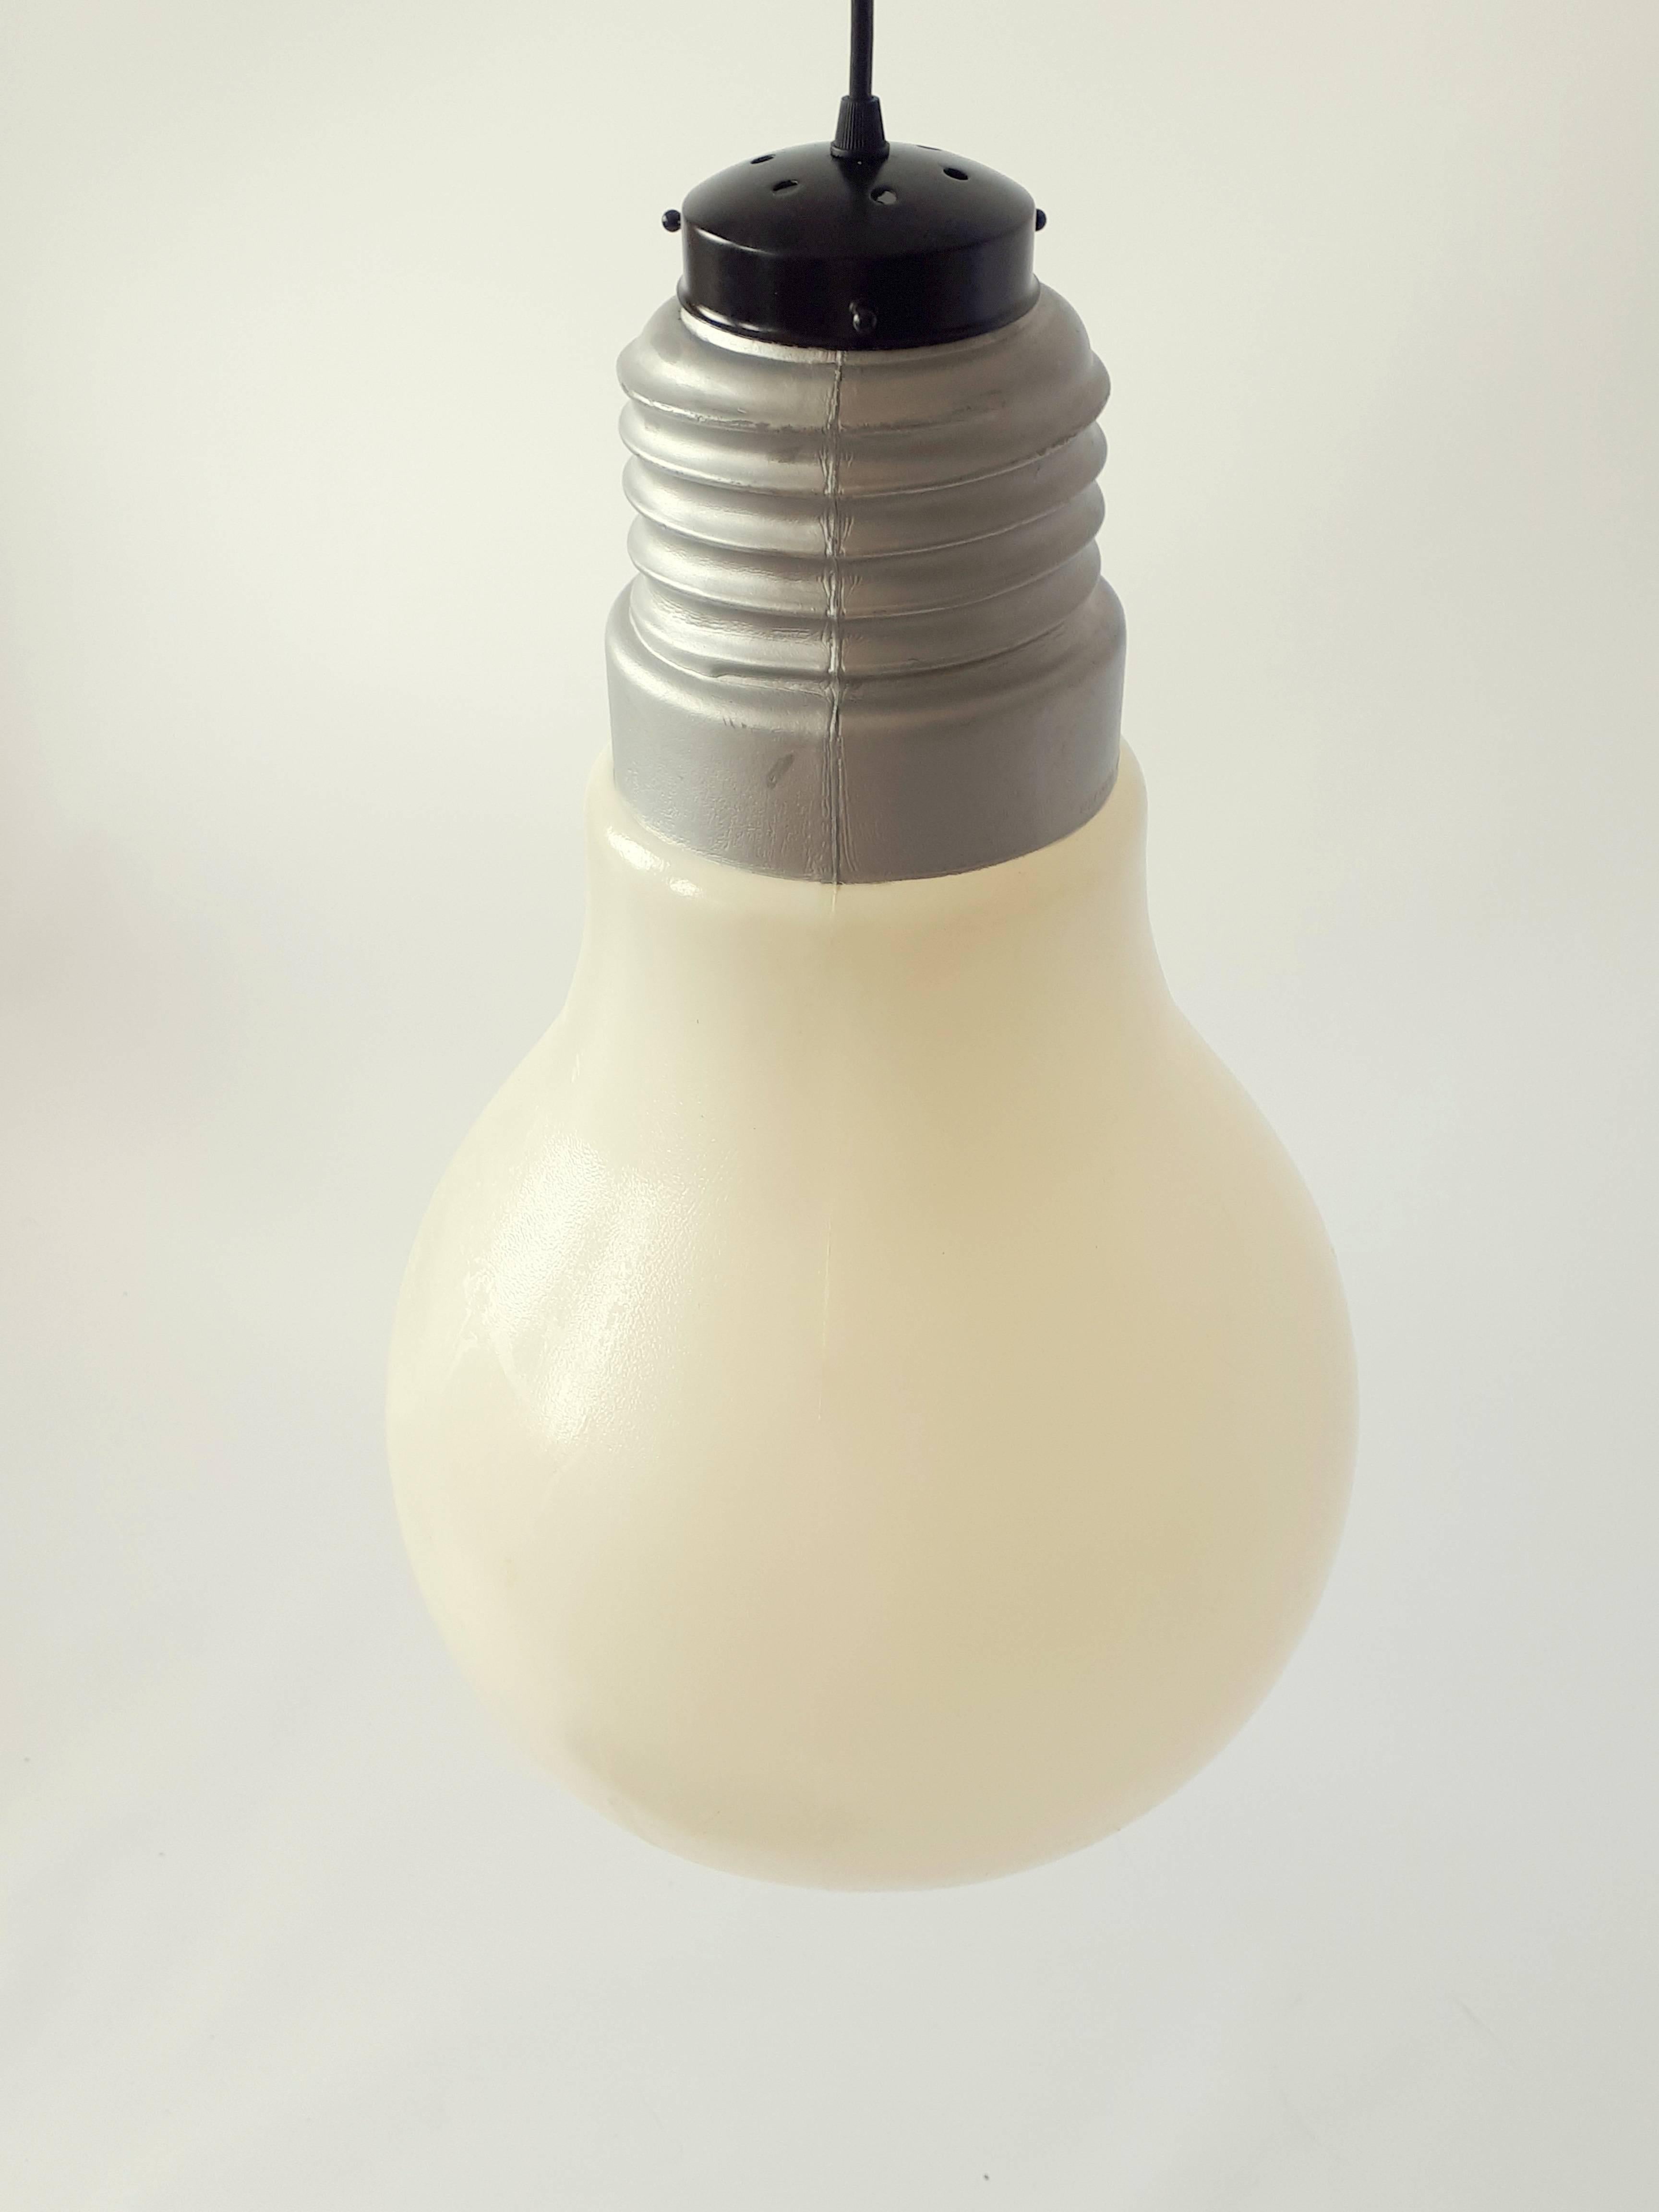 Plastic Light Bulb Pendant from Ingo Maurer, 1969, USA (amerikanisch)